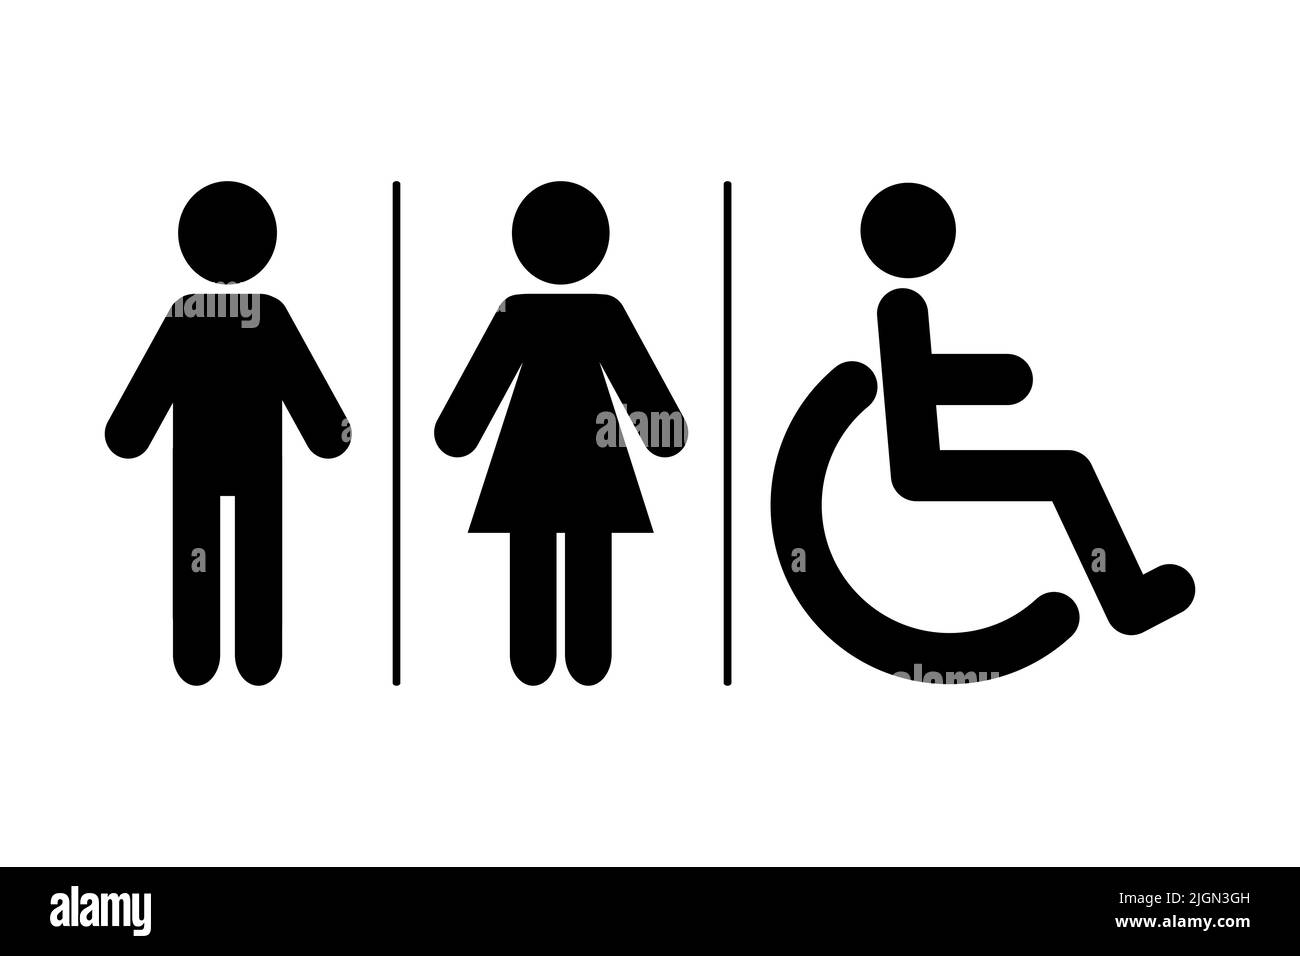 WC sign icon. Toilet symbol. Washroom vector icon Stock Vector